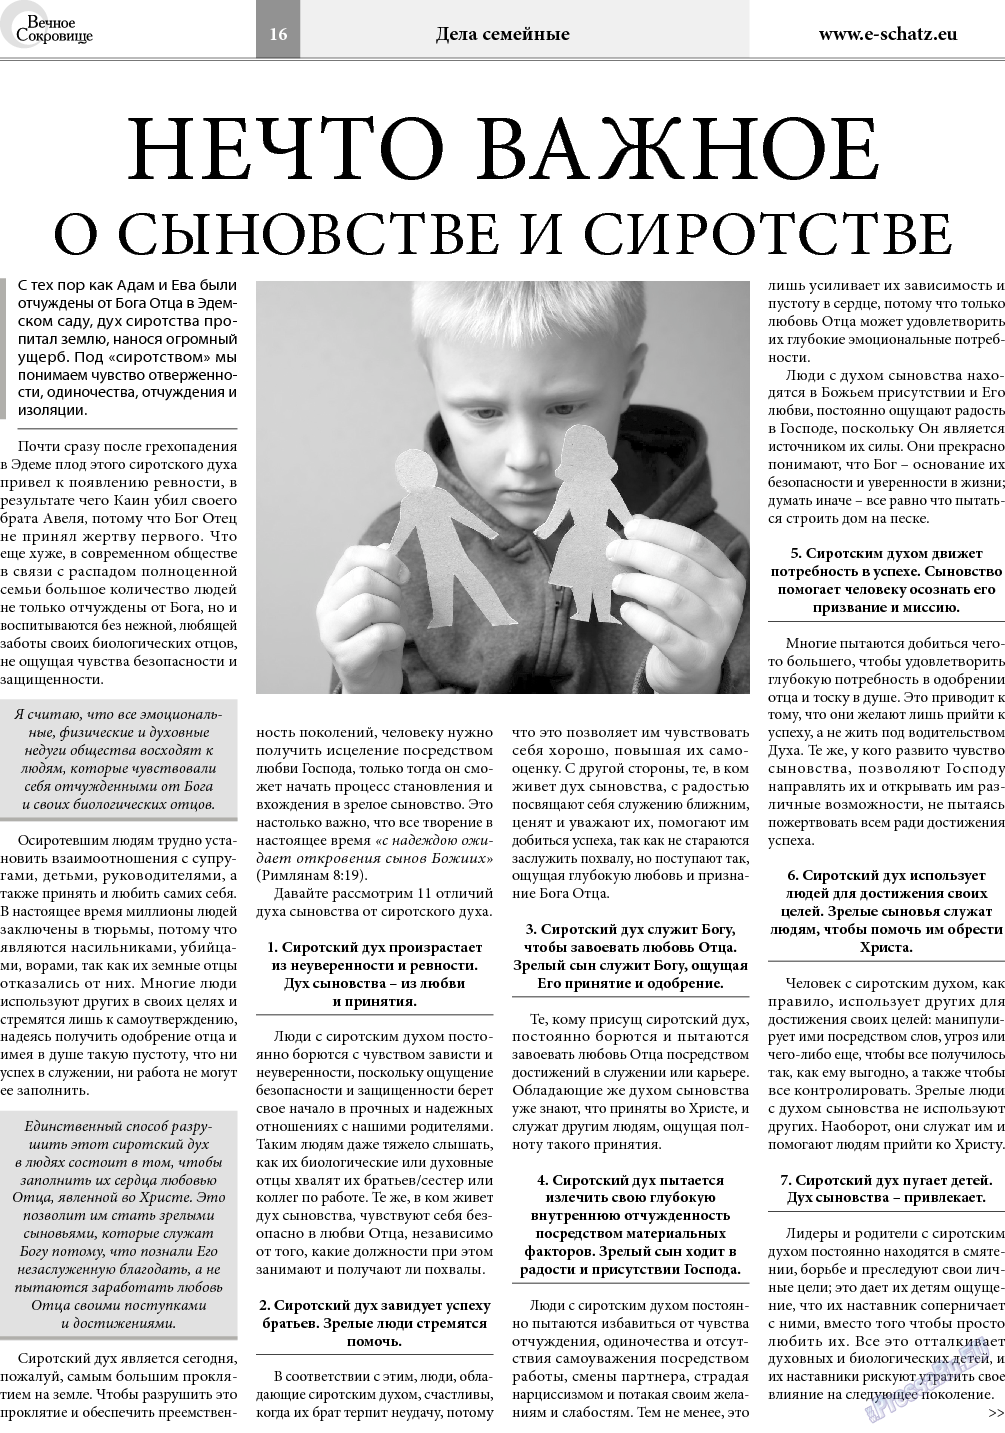 Вечное сокровище (газета). 2018 год, номер 2, стр. 16